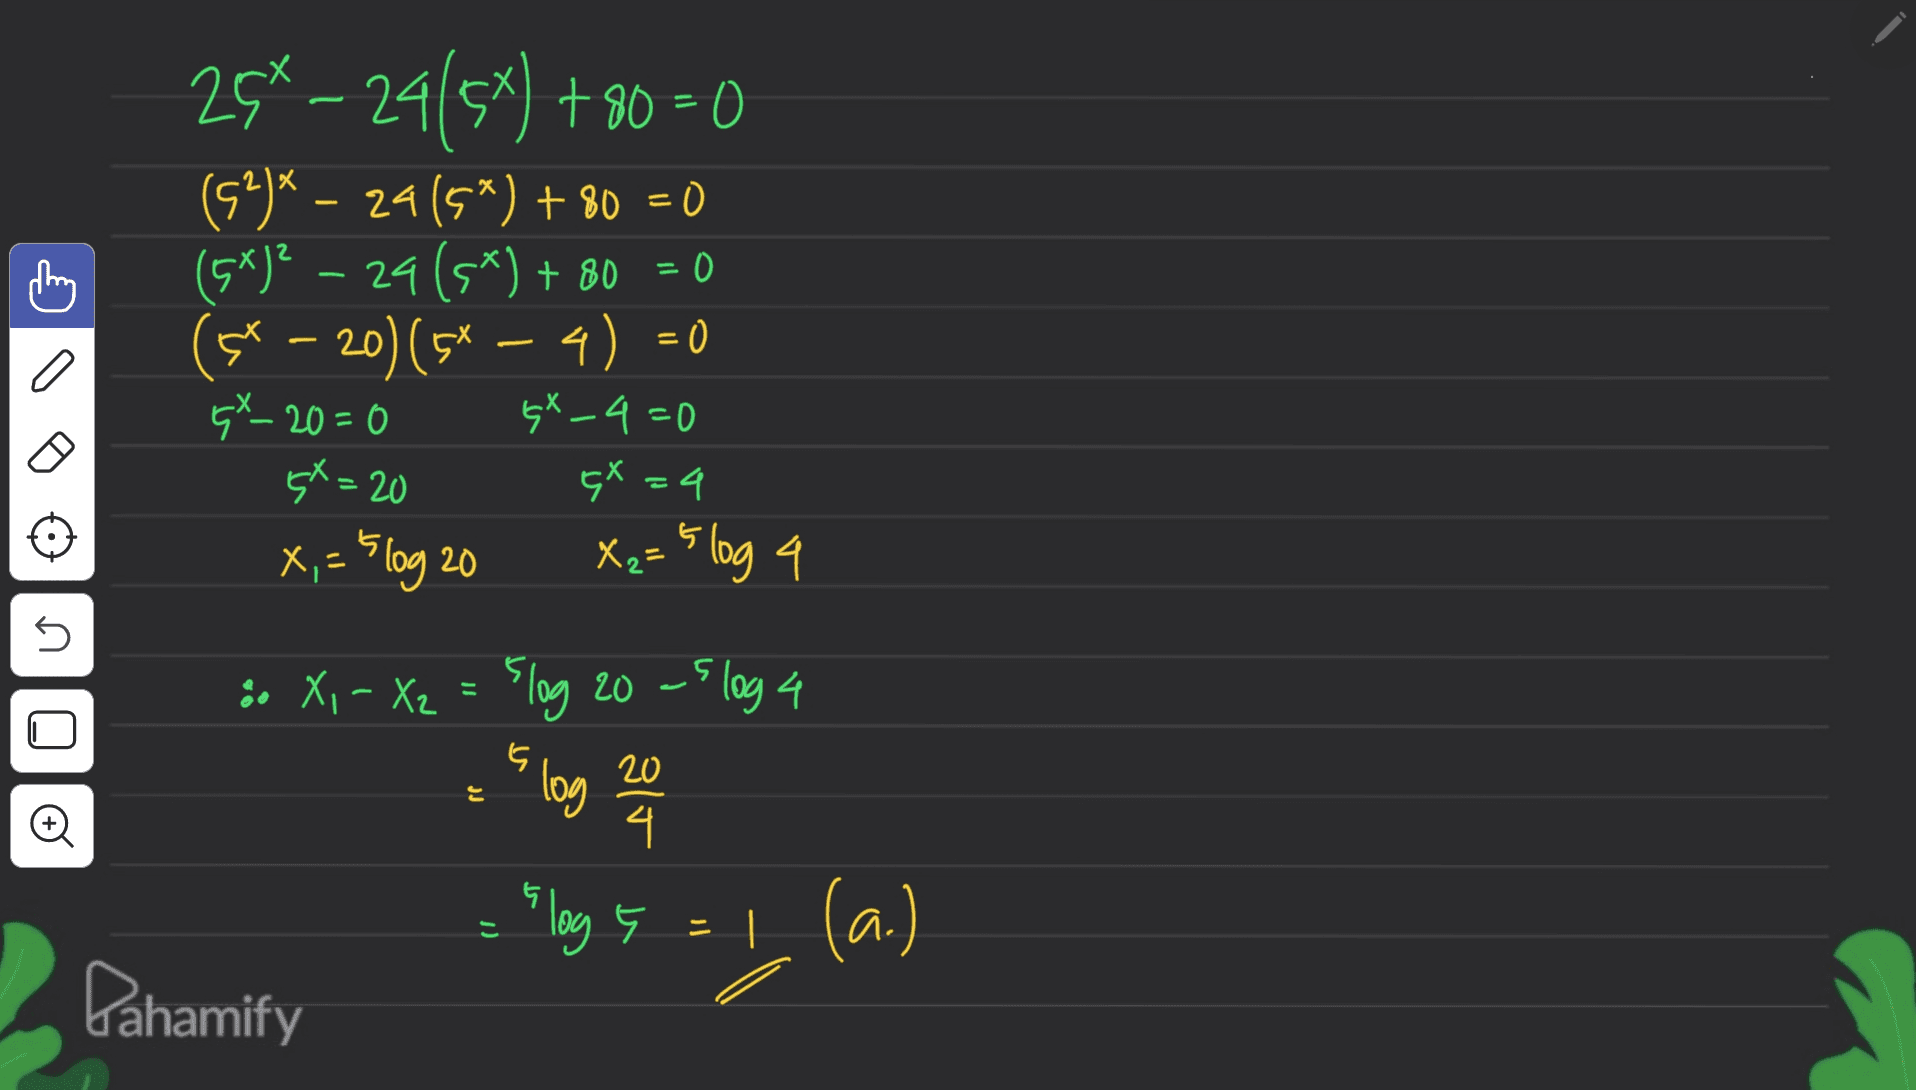 = 0 28-29/57) +80=0 (52)* – 24(5*) + 80 = 0 (5*)? – 24 (5*) + 80 (st – 20) (5* – 4) = 0 GX_20=0 sx_4=0 4X=4 X,- 5log 20 X₂=5 log 4 4X=20 on 00 5 5 20 JJ 8. X, - X2 = 5log 20 -5 log 4 log 4 == log 5 = 1. (a.) Pahamify 